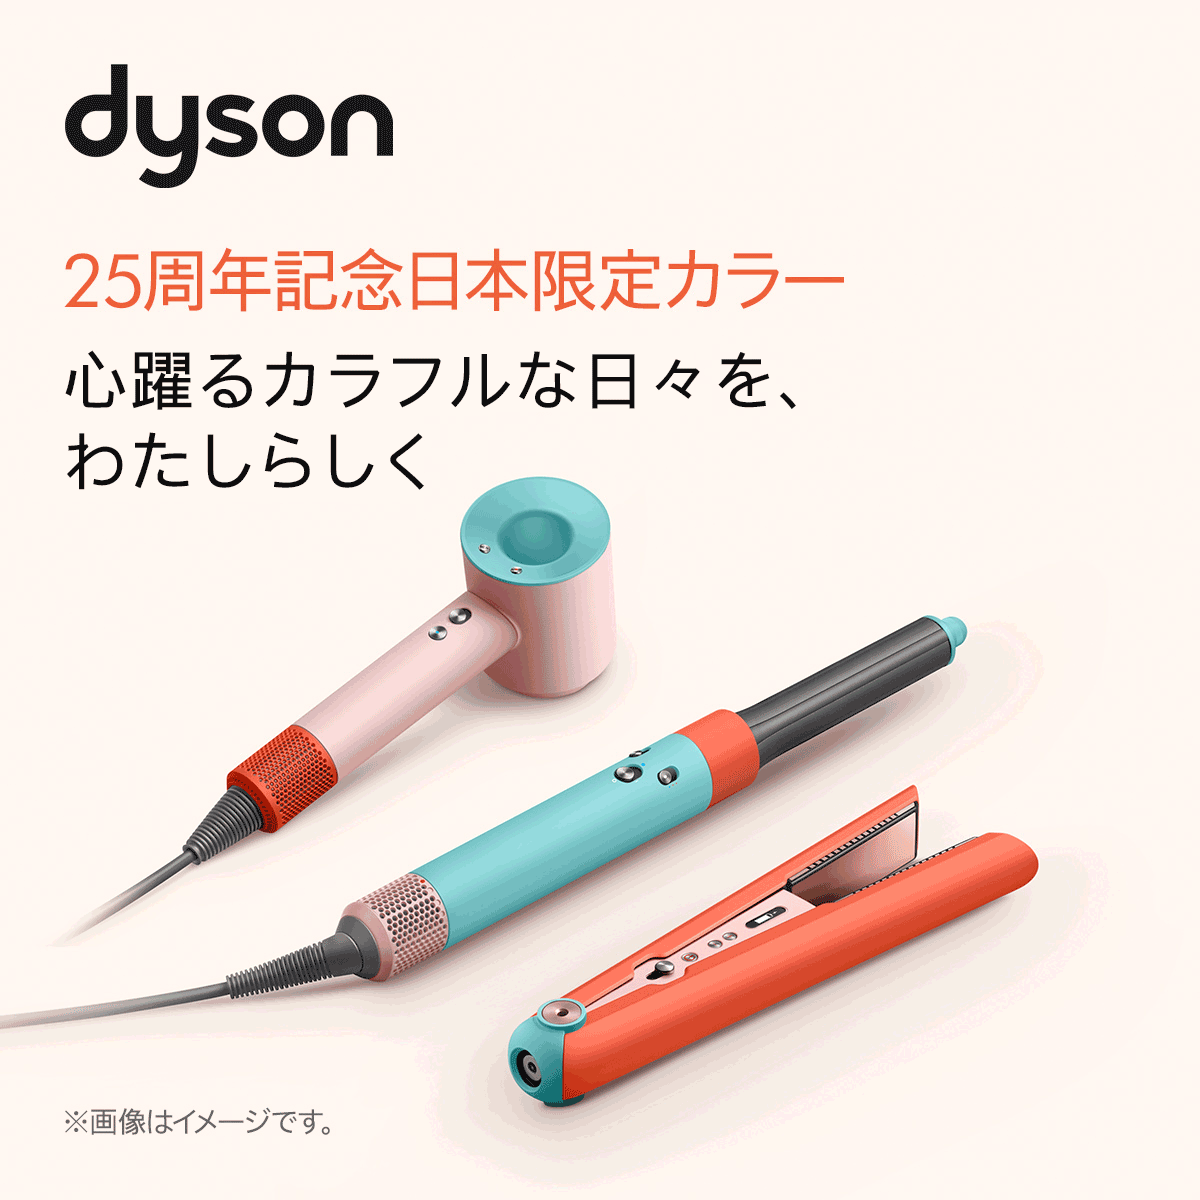 Dyson hd15 Supersonic Shine ダイソン ドライヤー-